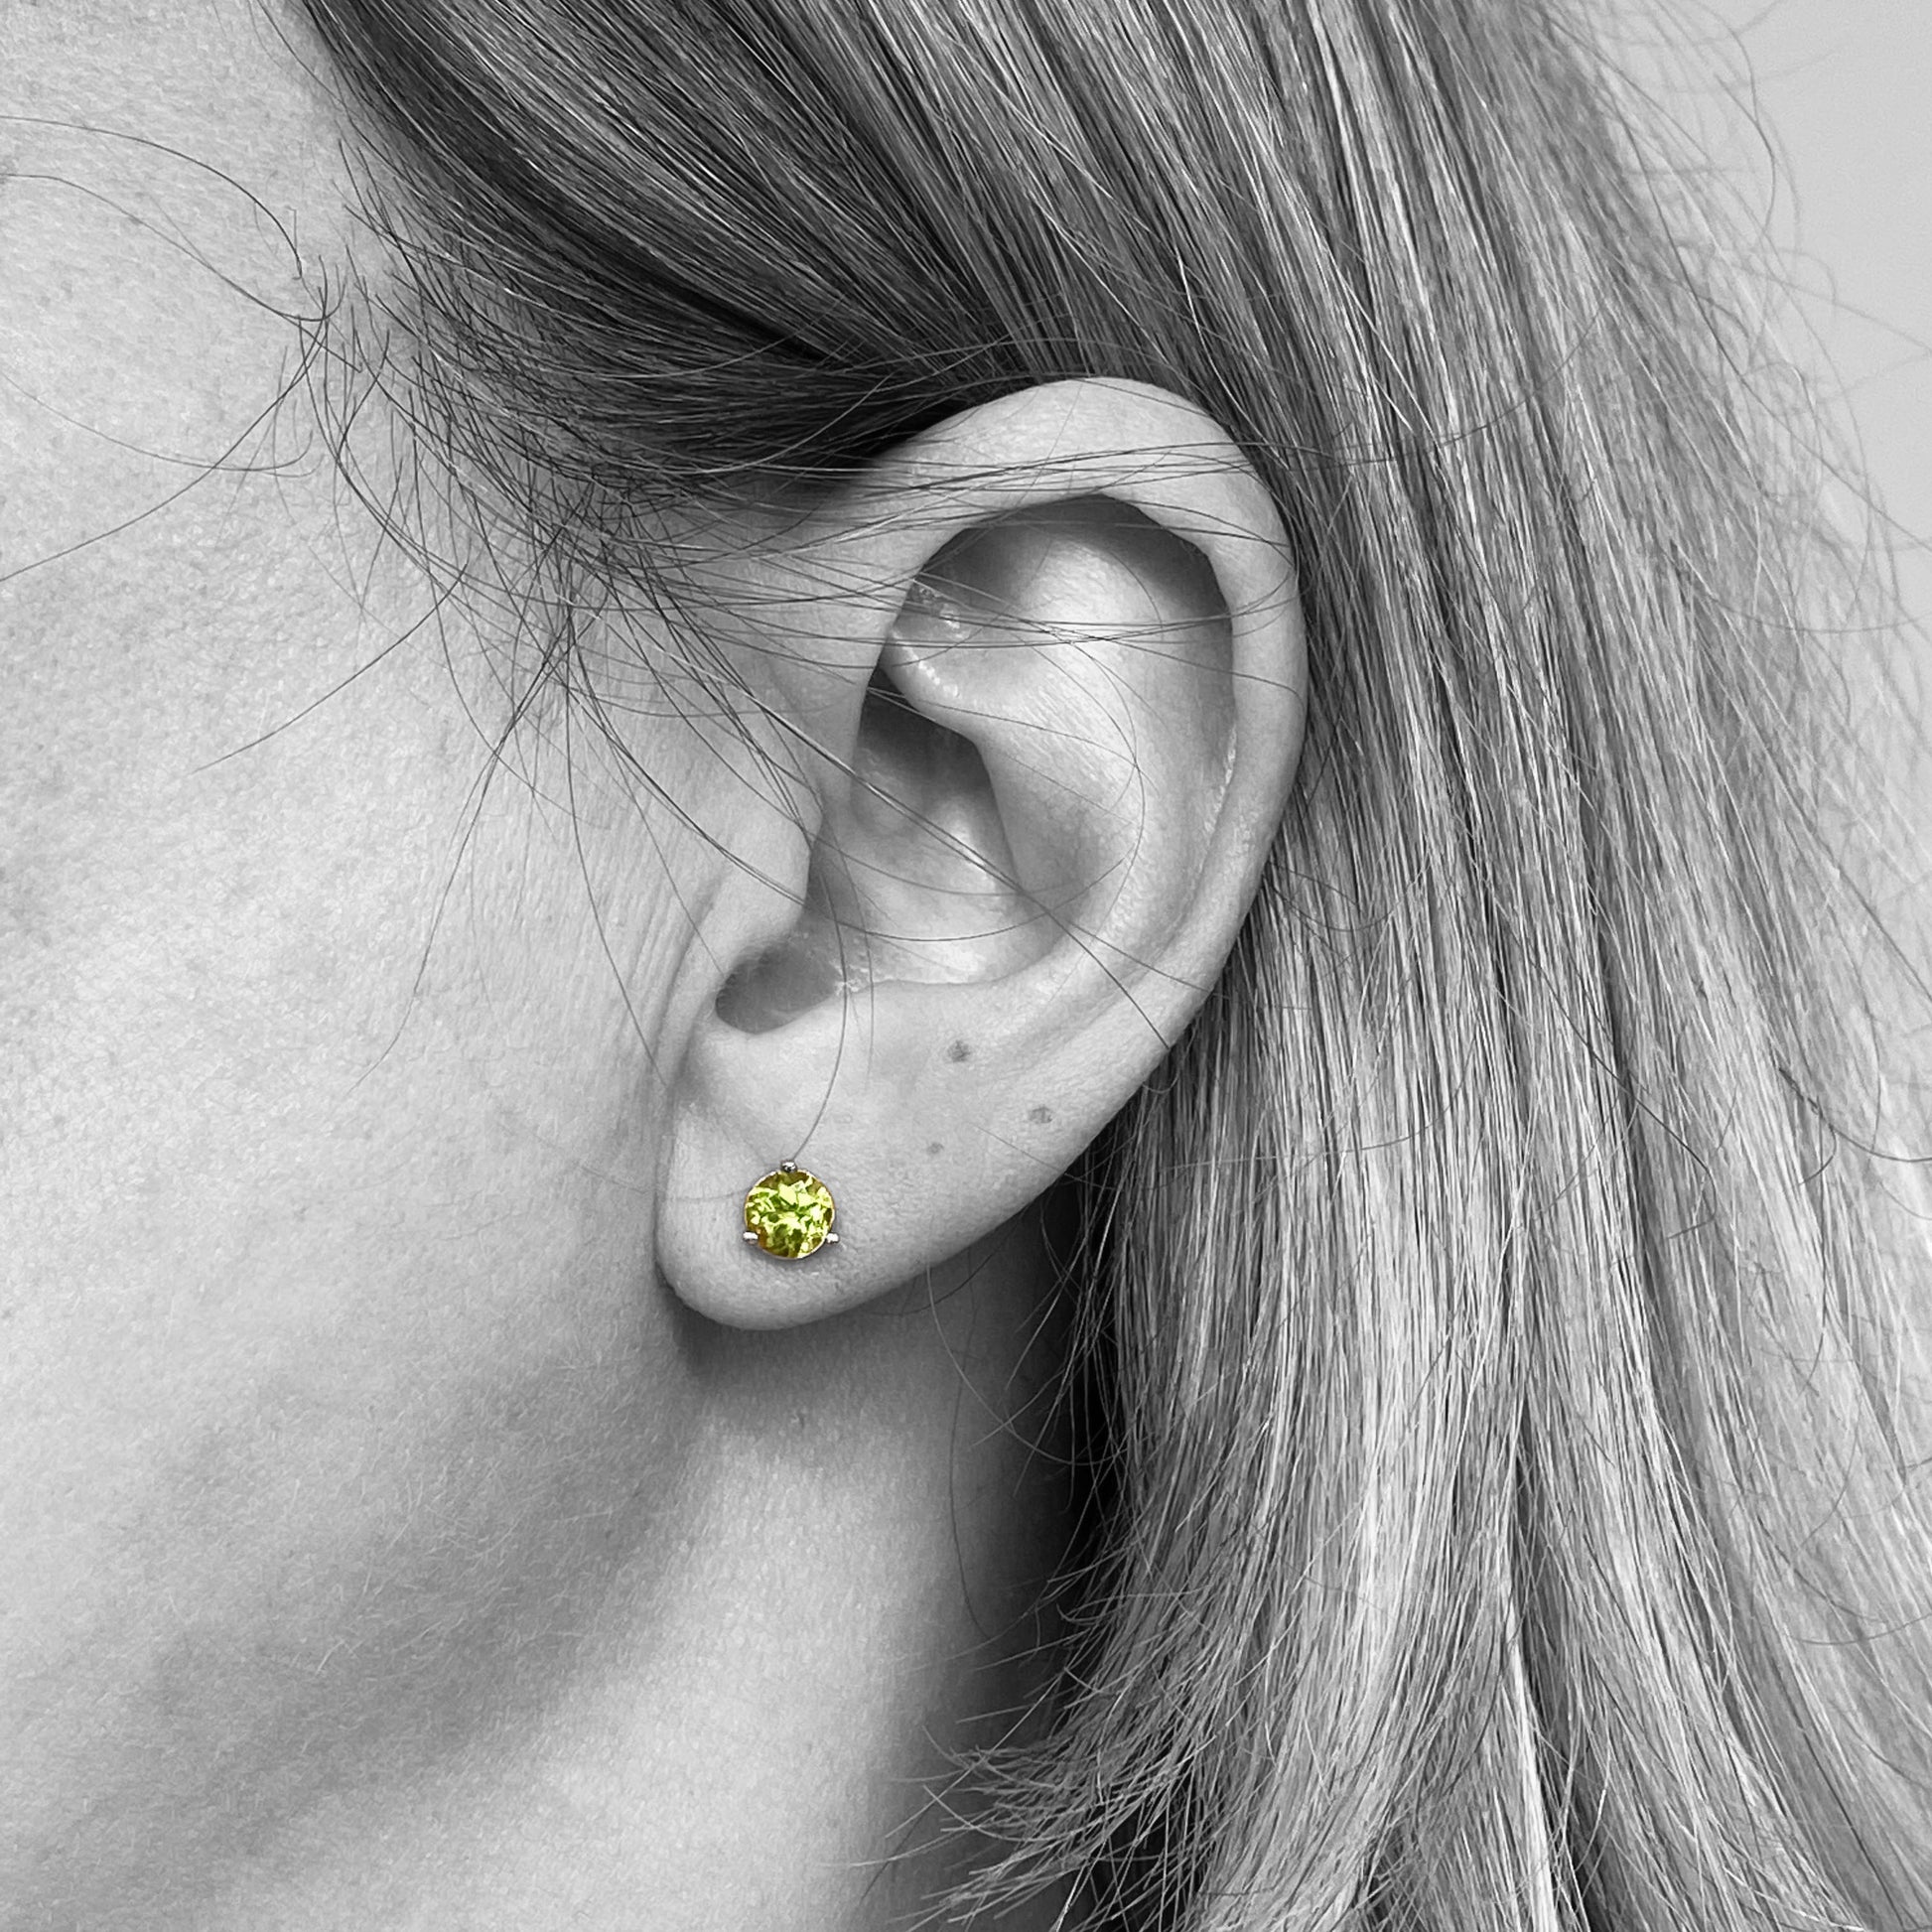 14kw Arizona Peridot Stud Earrings - eklektic jewelry studio